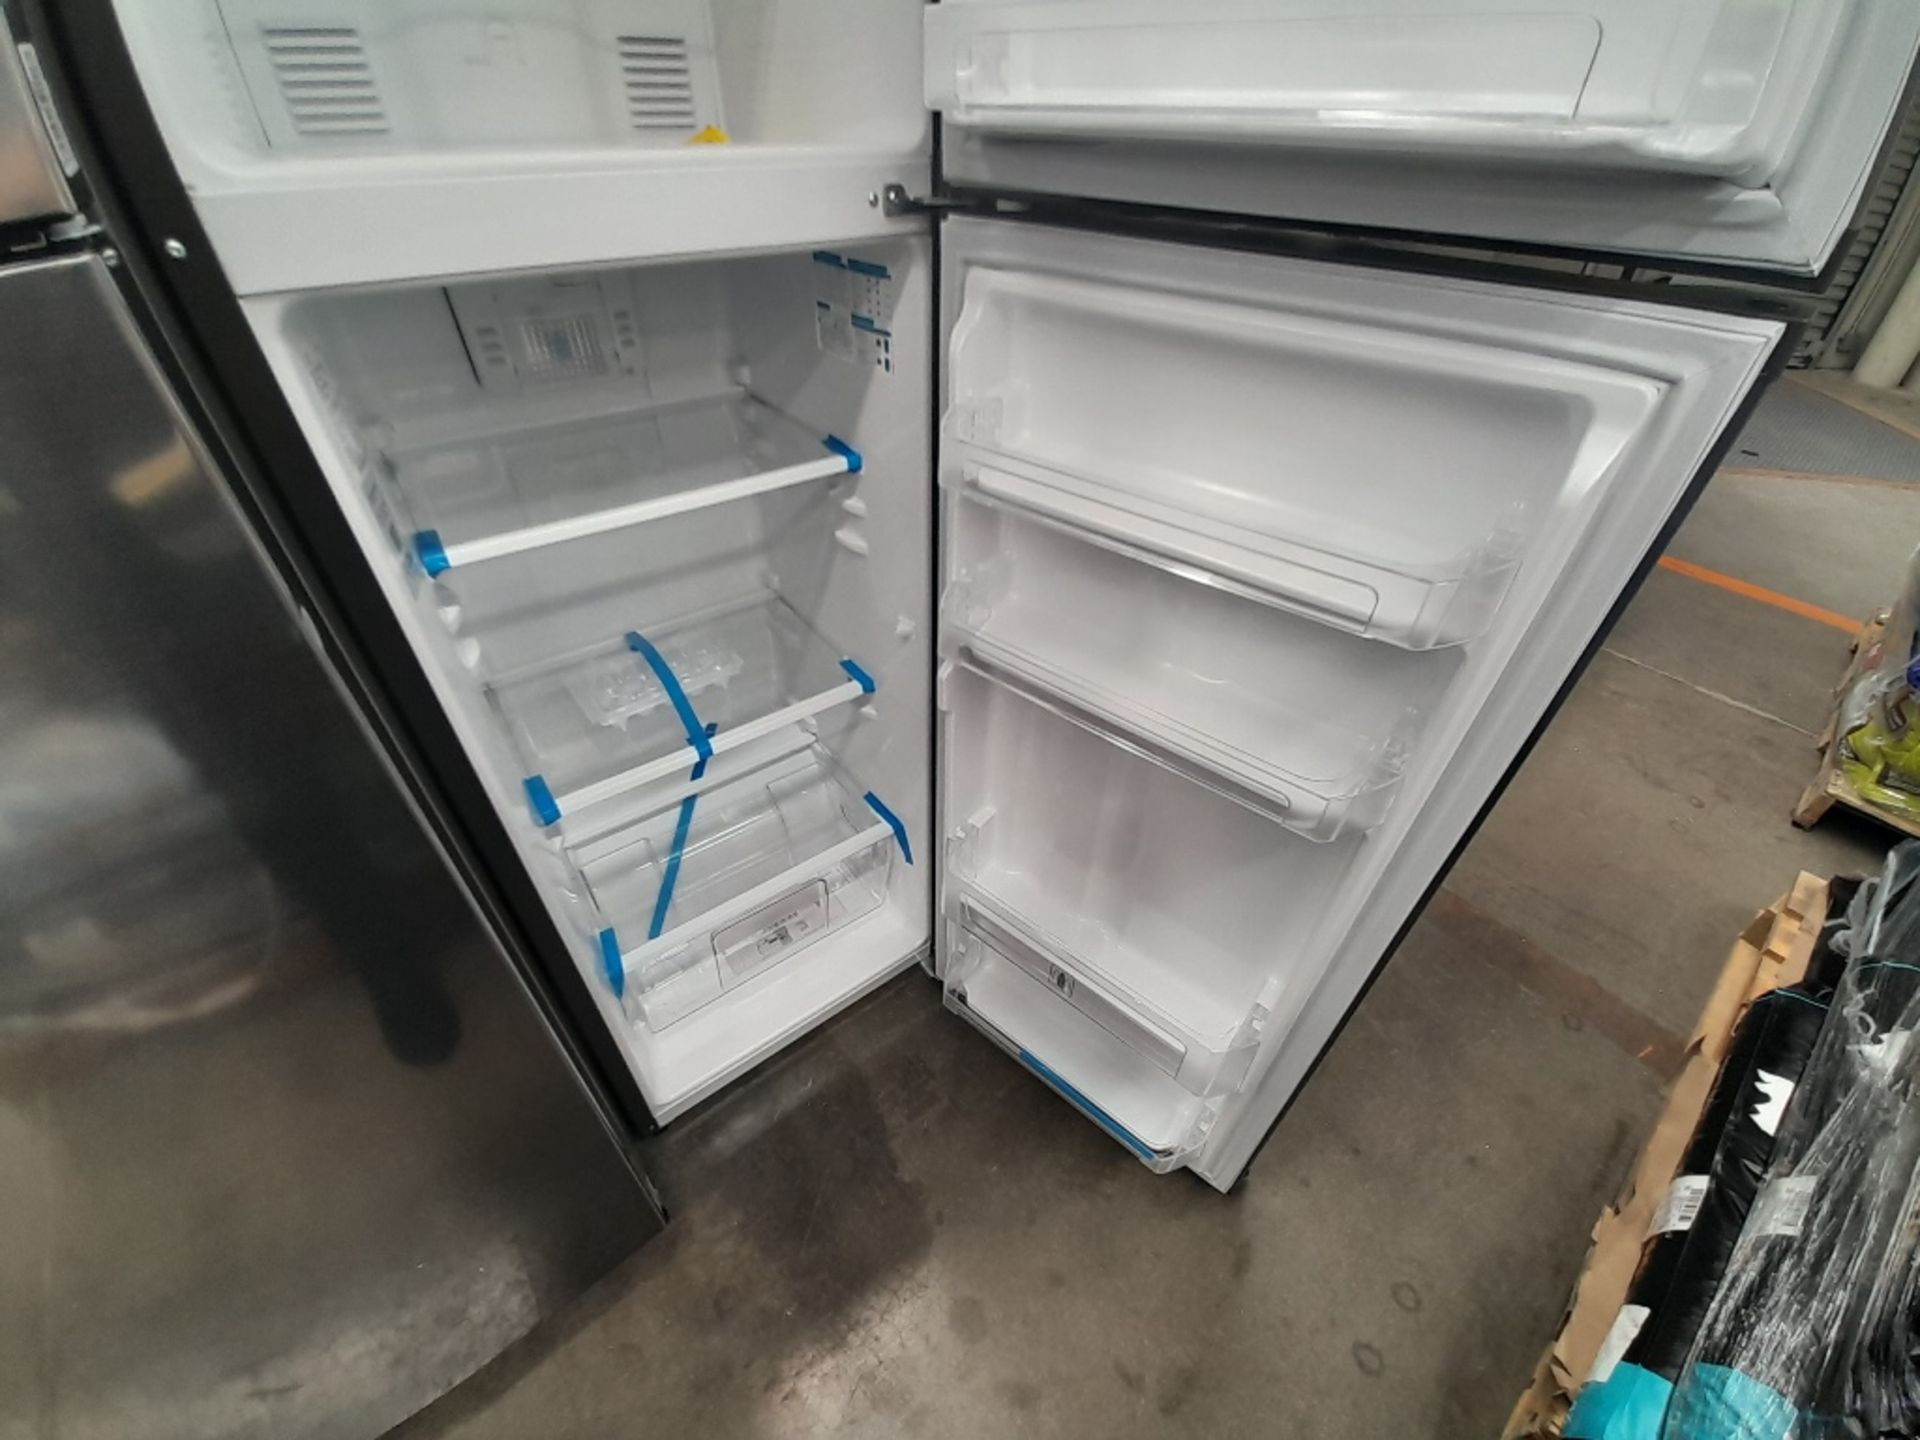 Lote de 2 refrigeradores contiene: 1 refrigerador Marca MABE, Modelo RMA250PVMR, Serie 610425, Colo - Image 5 of 8